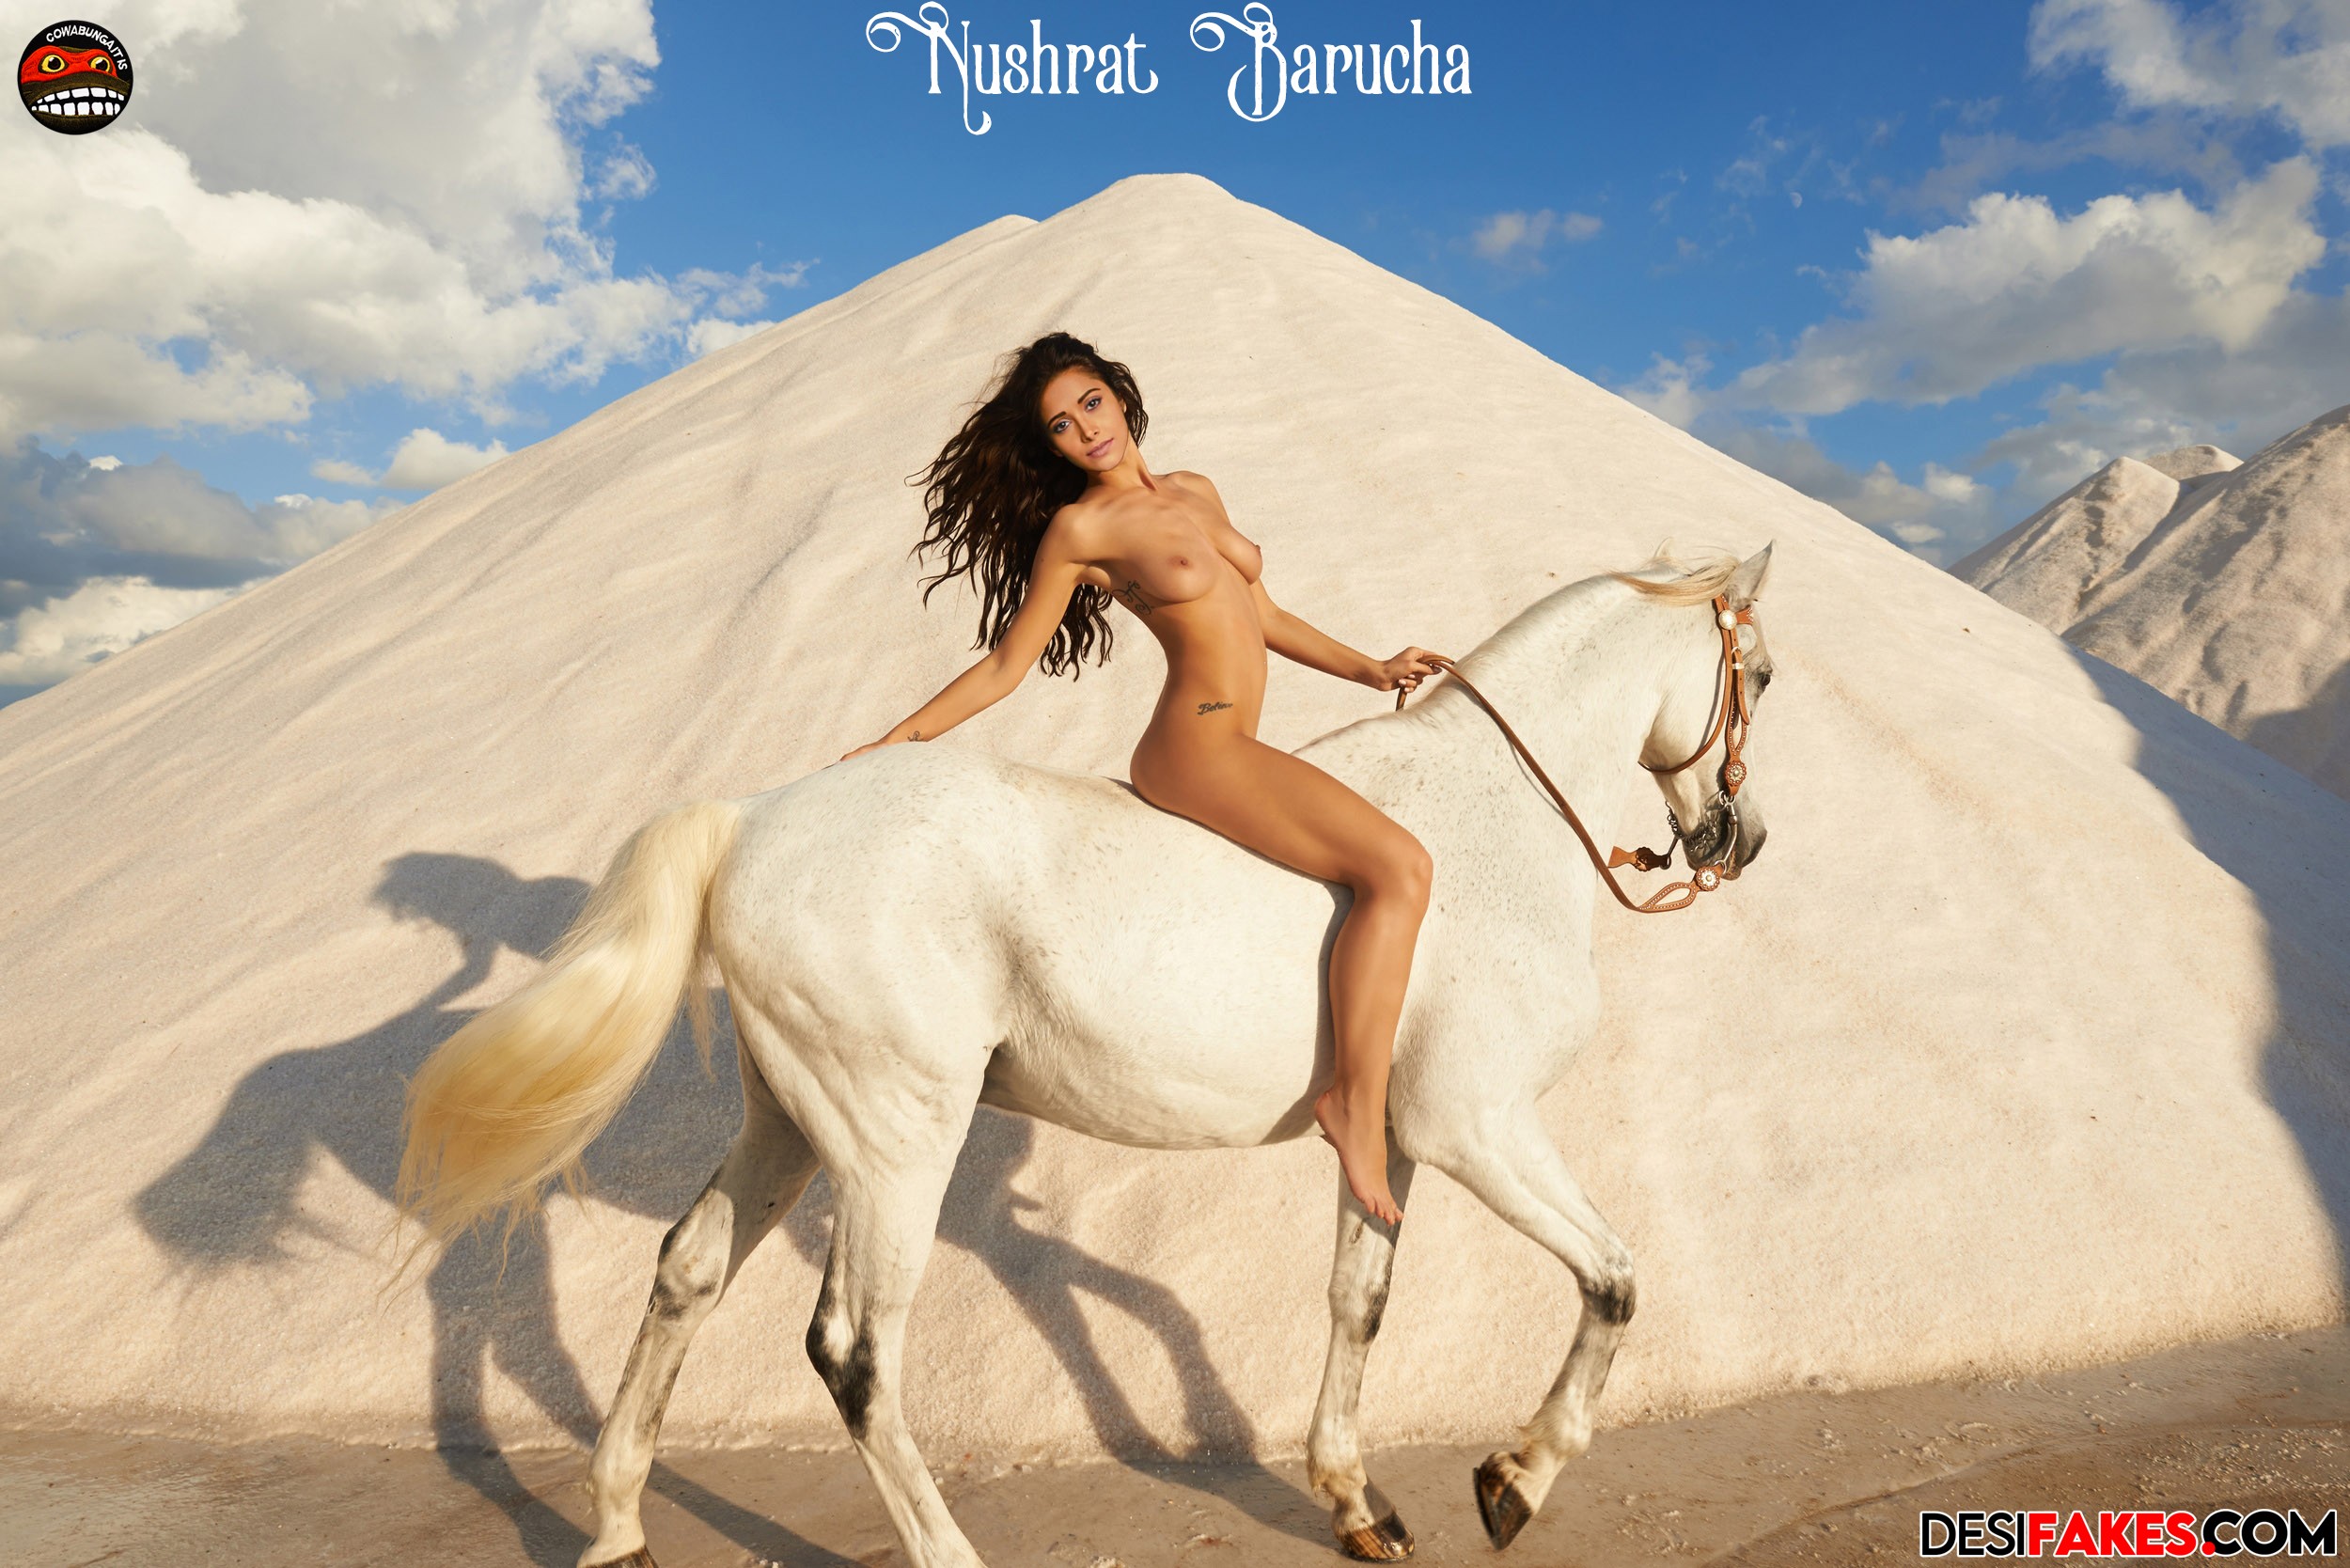 Nushrat Bharucha nude on horse